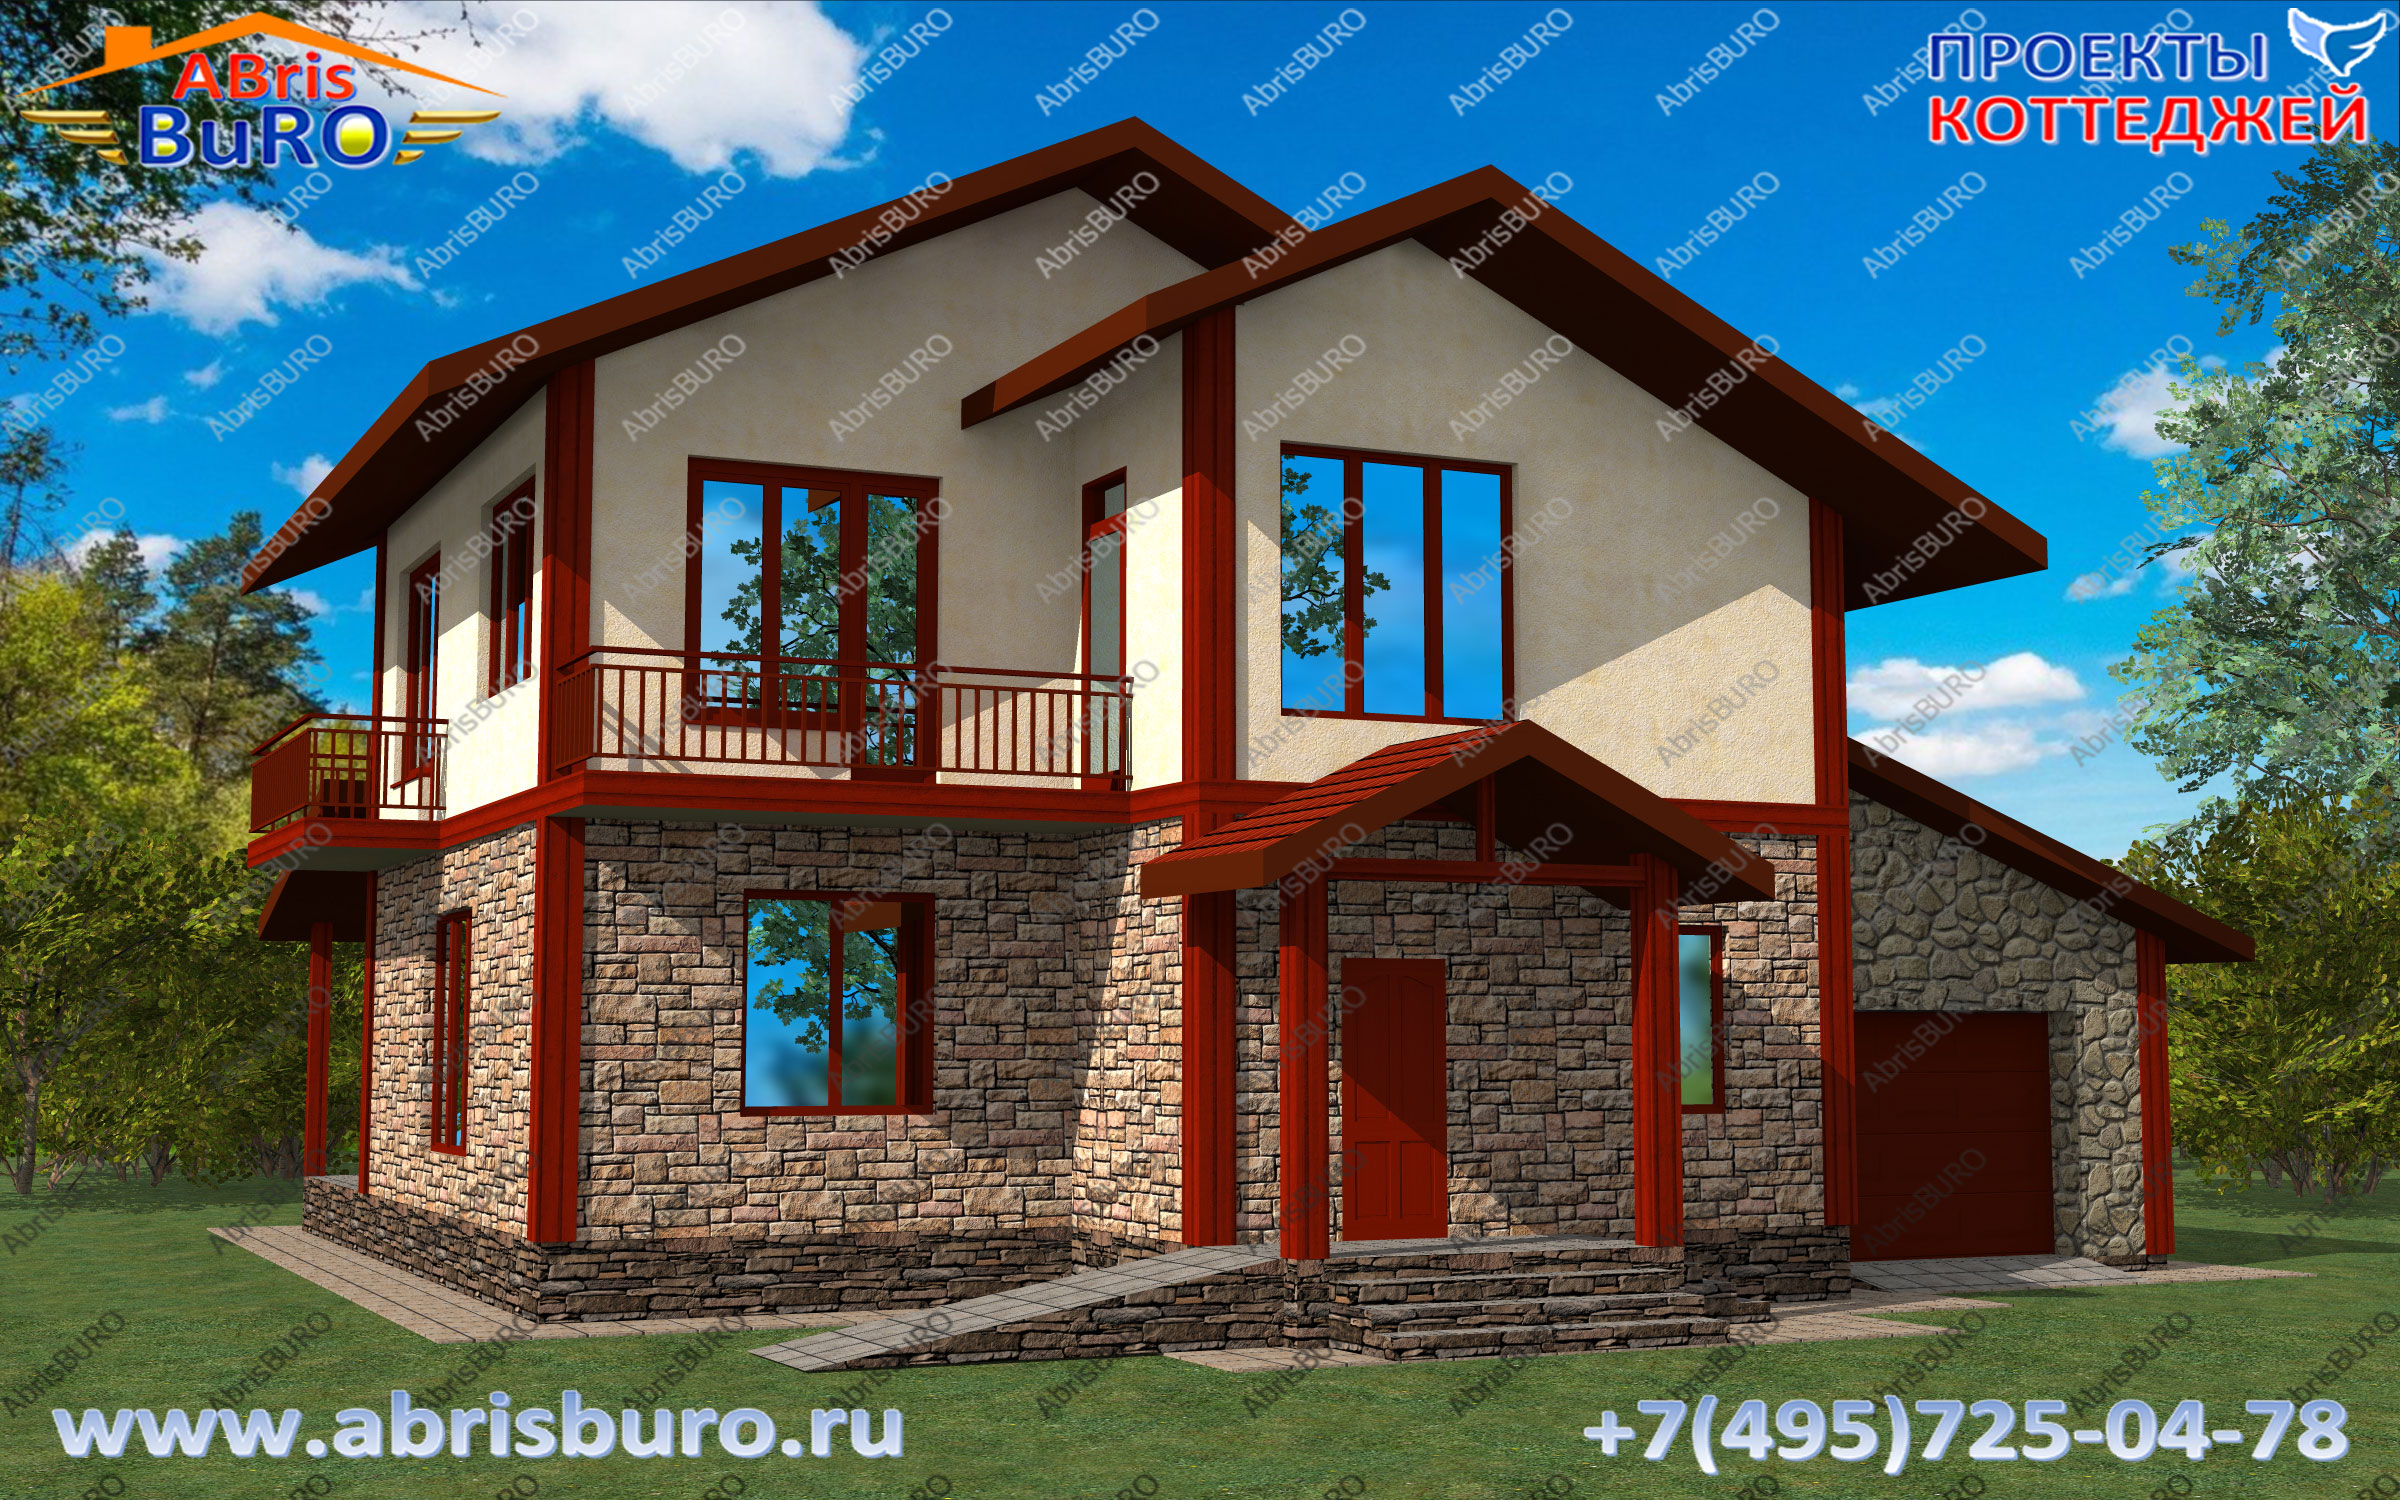 Проекты удобных коттеджей на сайте www.abrisburo.ru